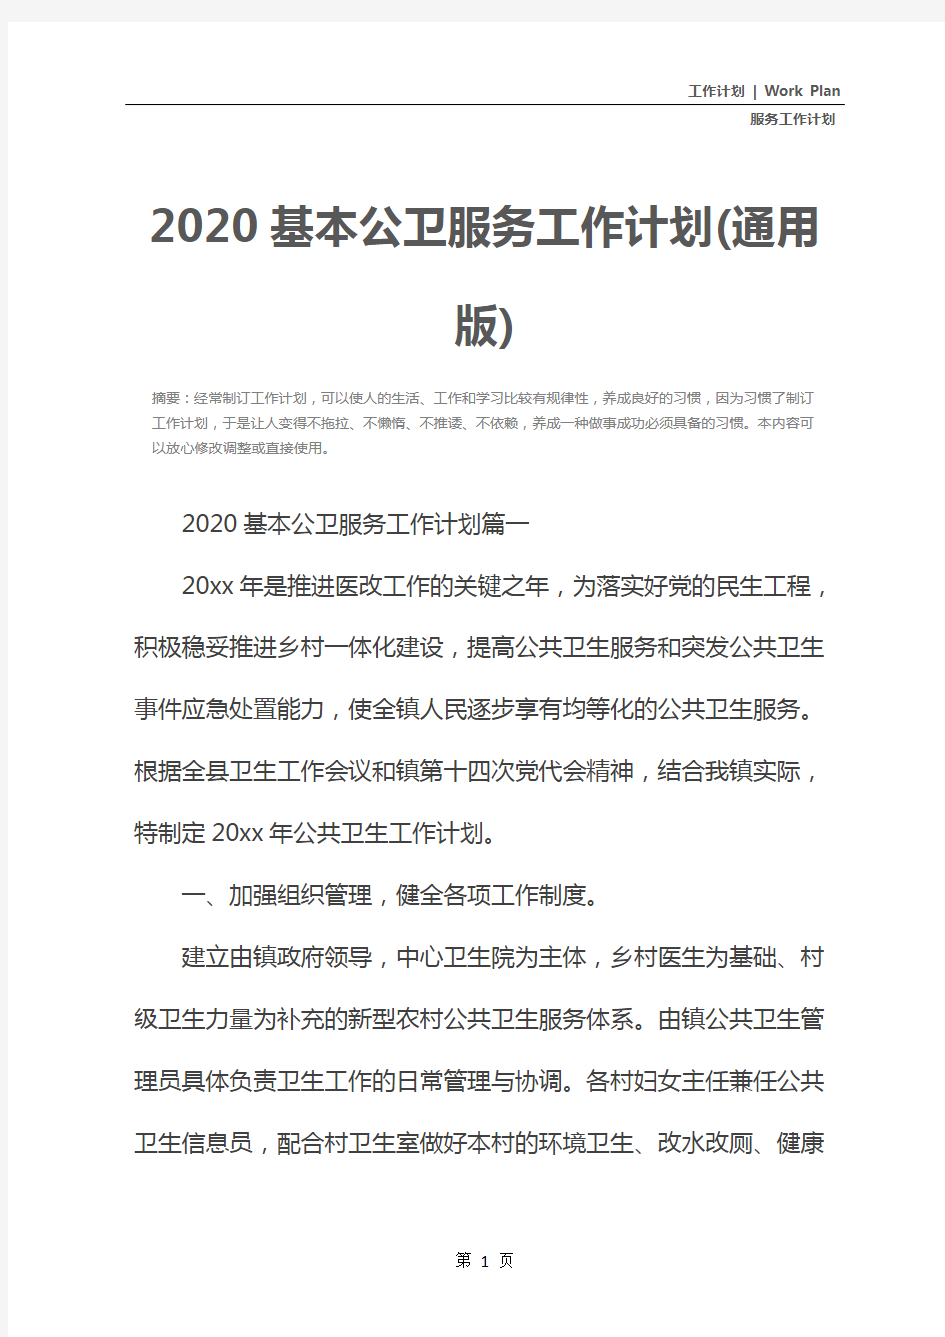 2020基本公卫服务工作计划(通用版)